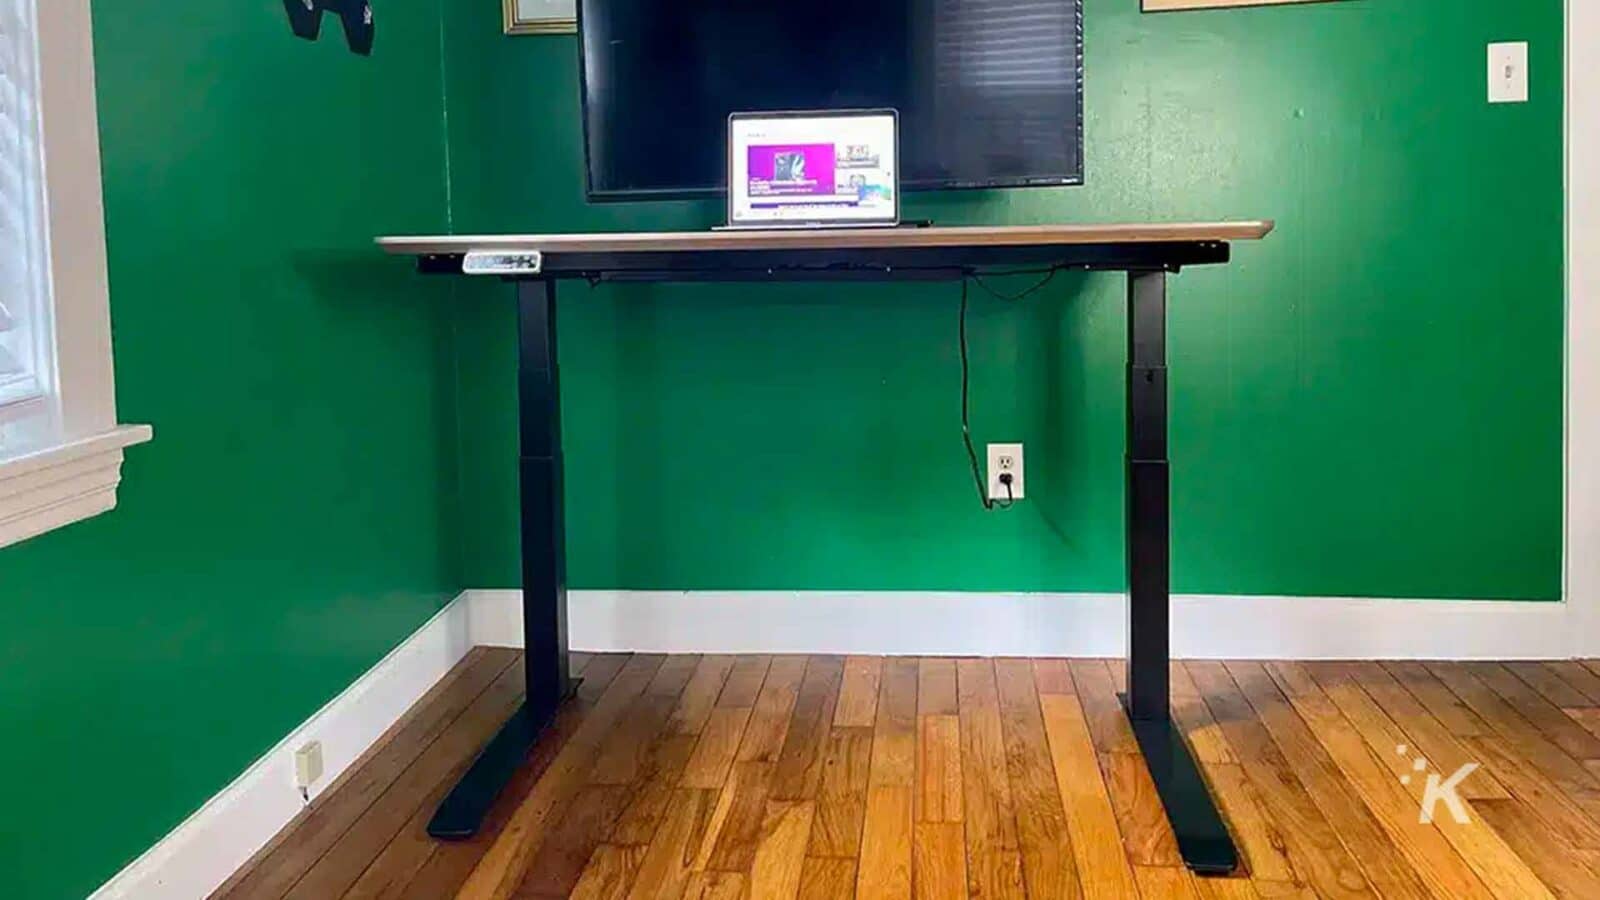 El escritorio tiene una computadora.